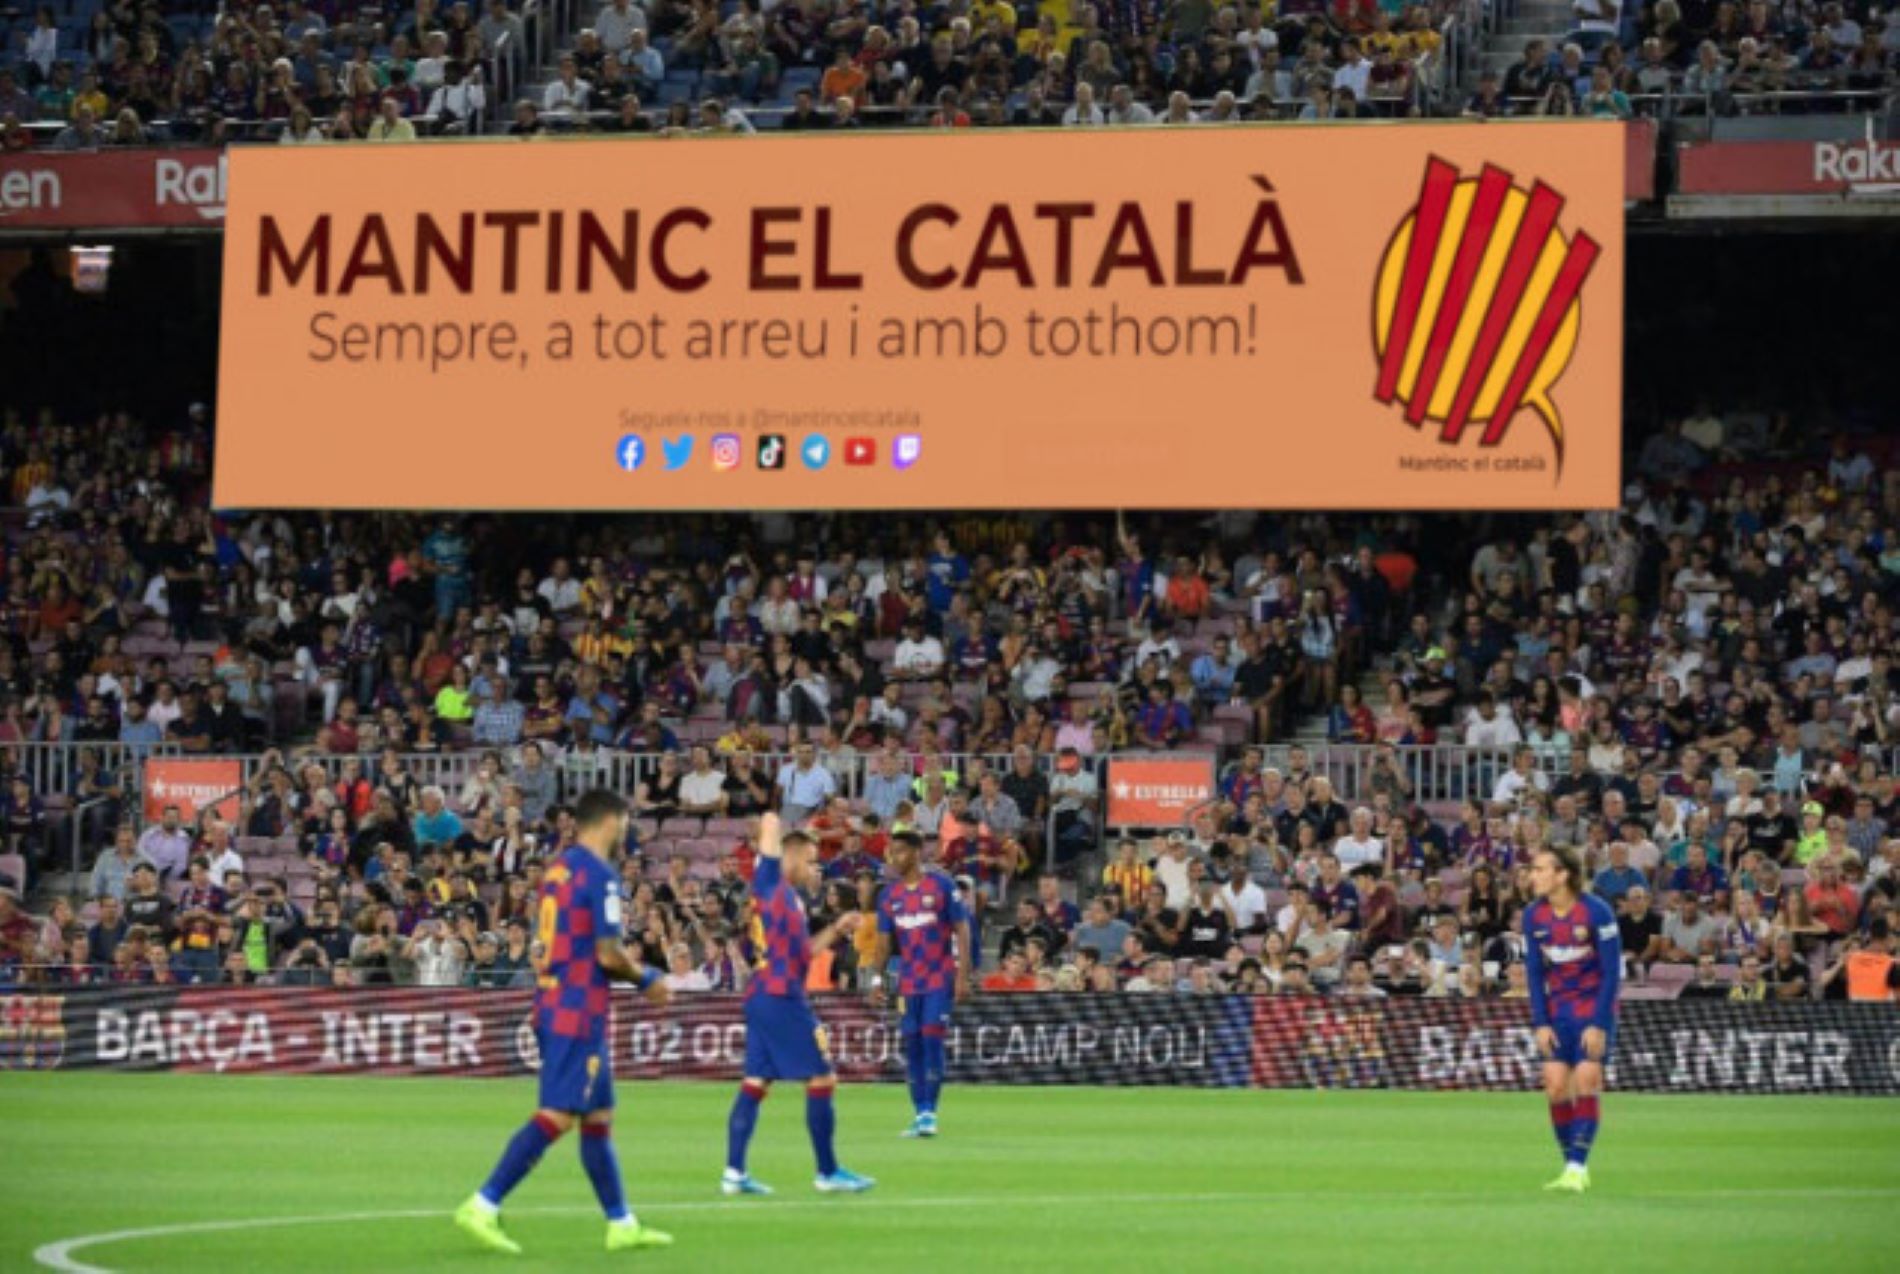 Mantinc el Català engega una campanya per penjar una pancarta gegant al Camp Nou